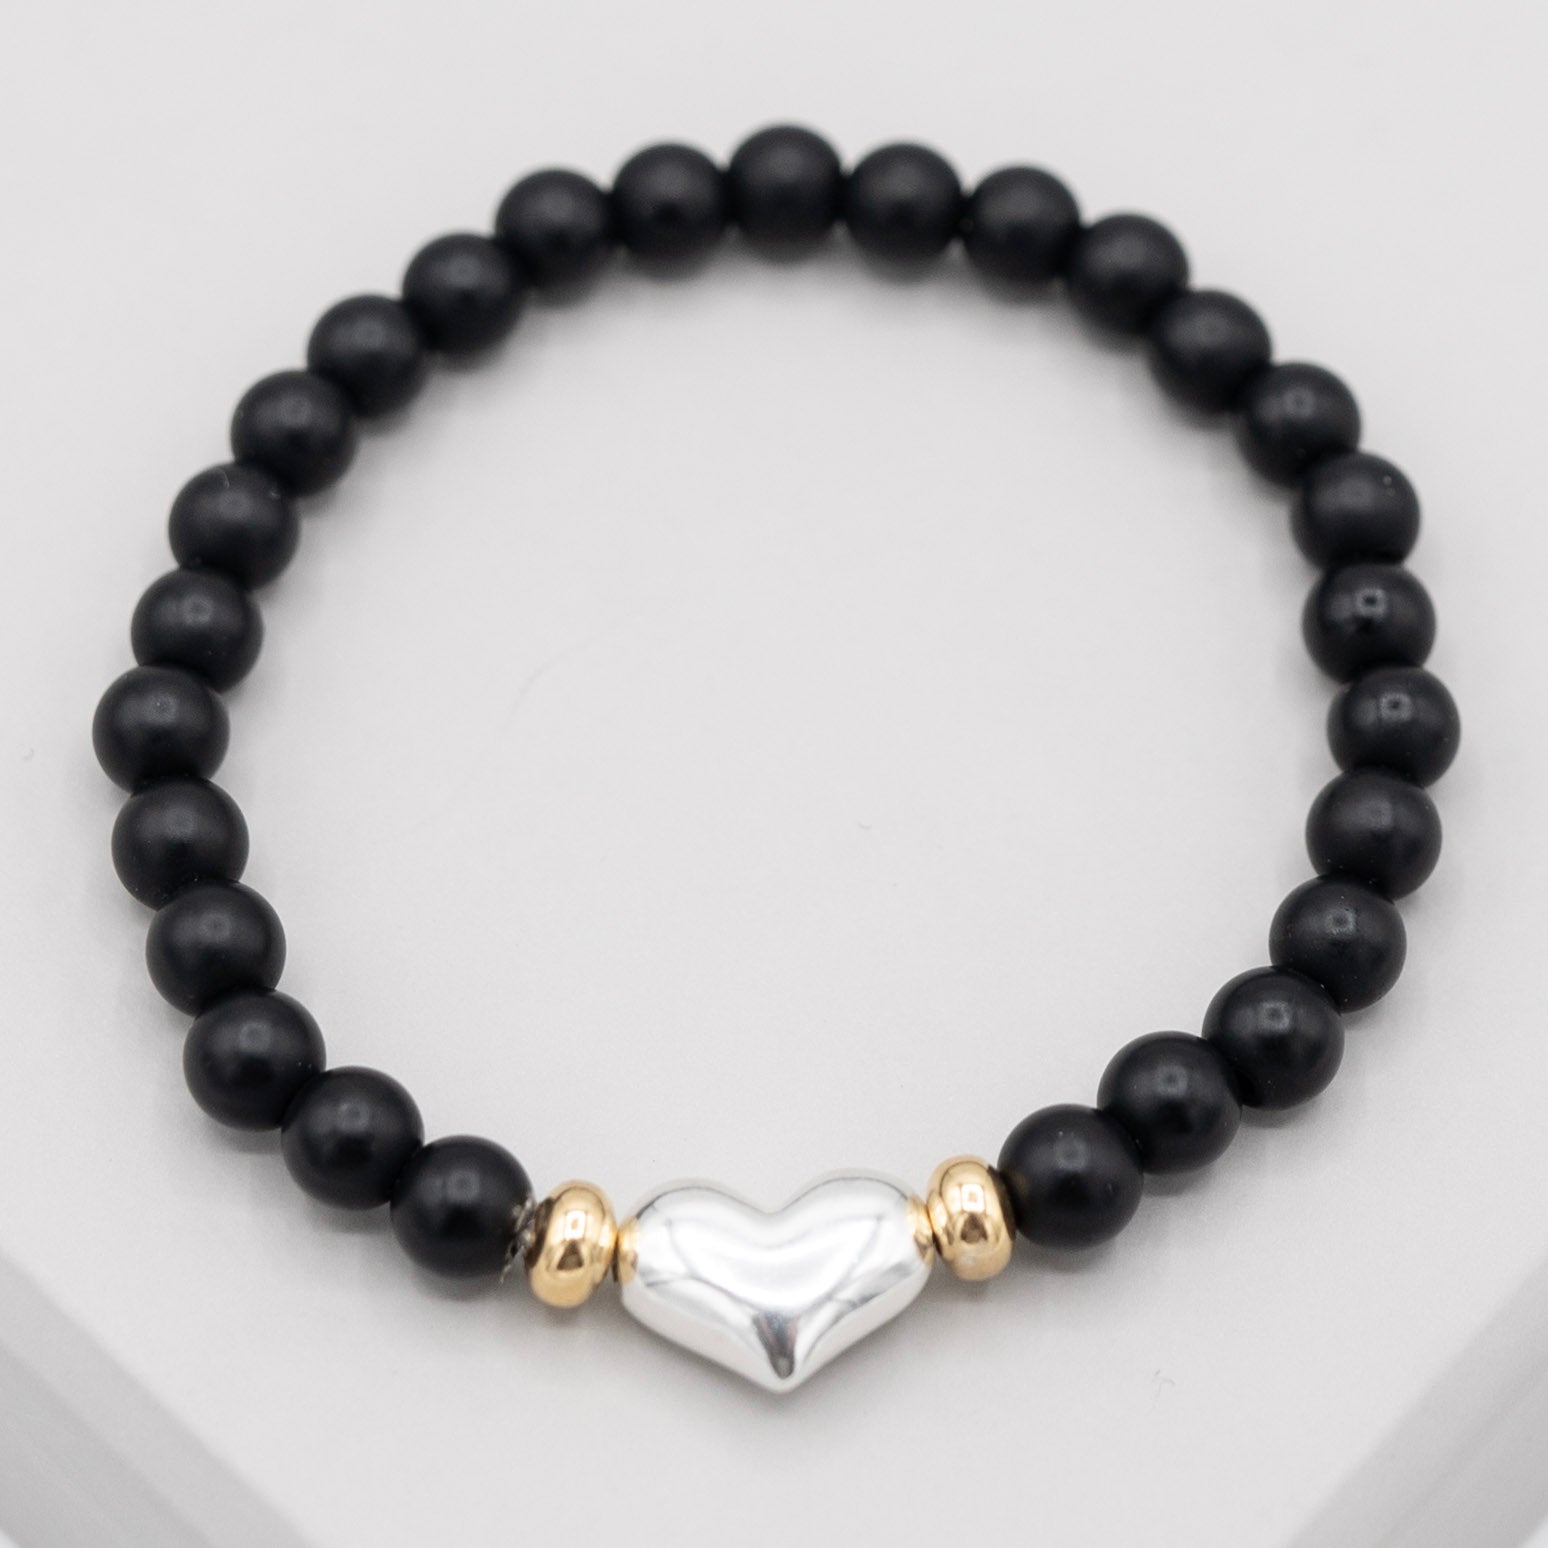 6mm Matte Black Onyx Puffy Heart Bracelet